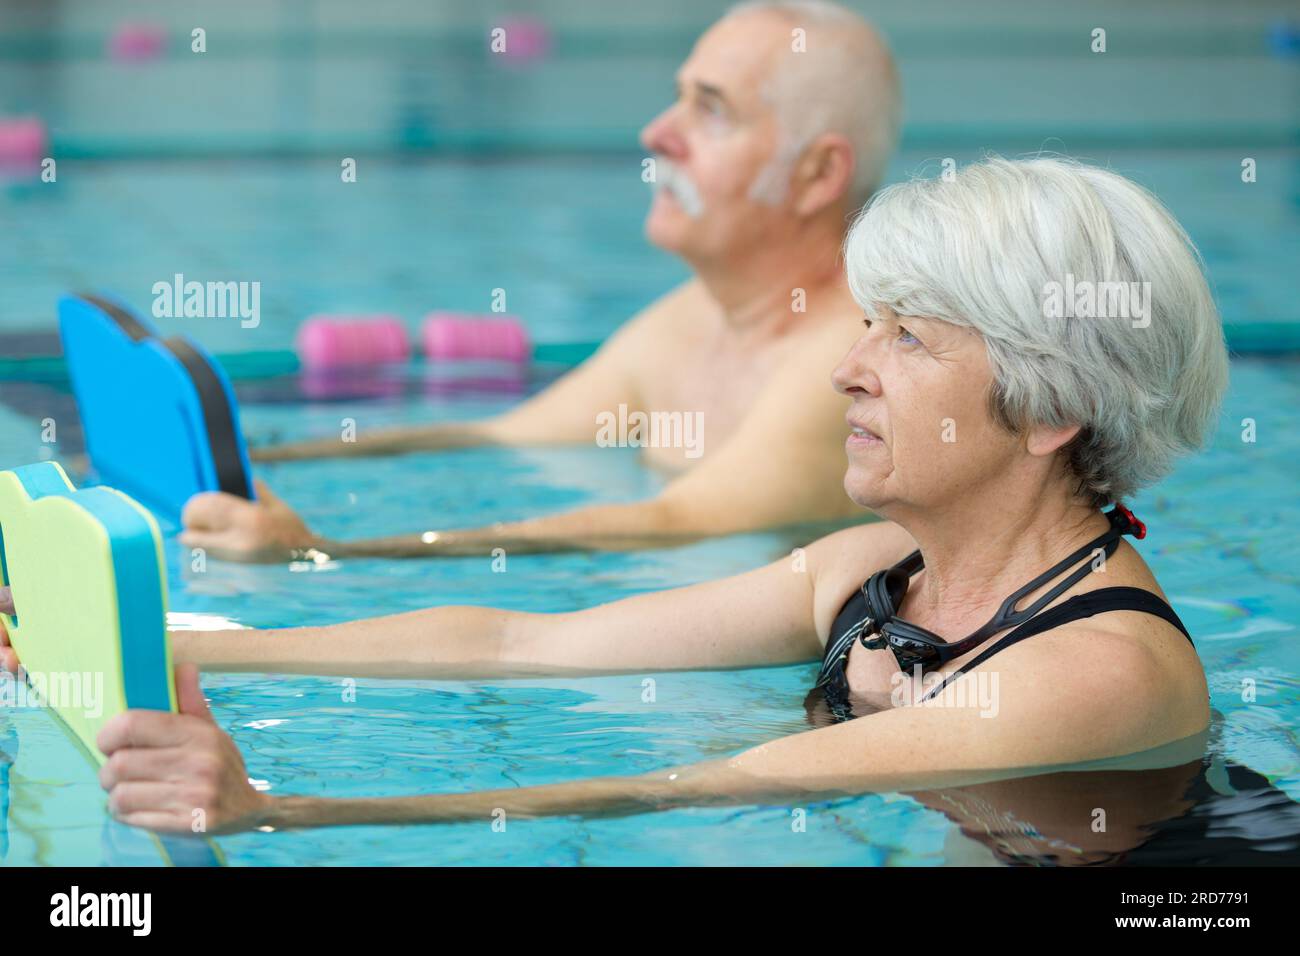 Haciendo ejercicio piscina fotografías e imágenes de alta resolución -  Página 3 - Alamy